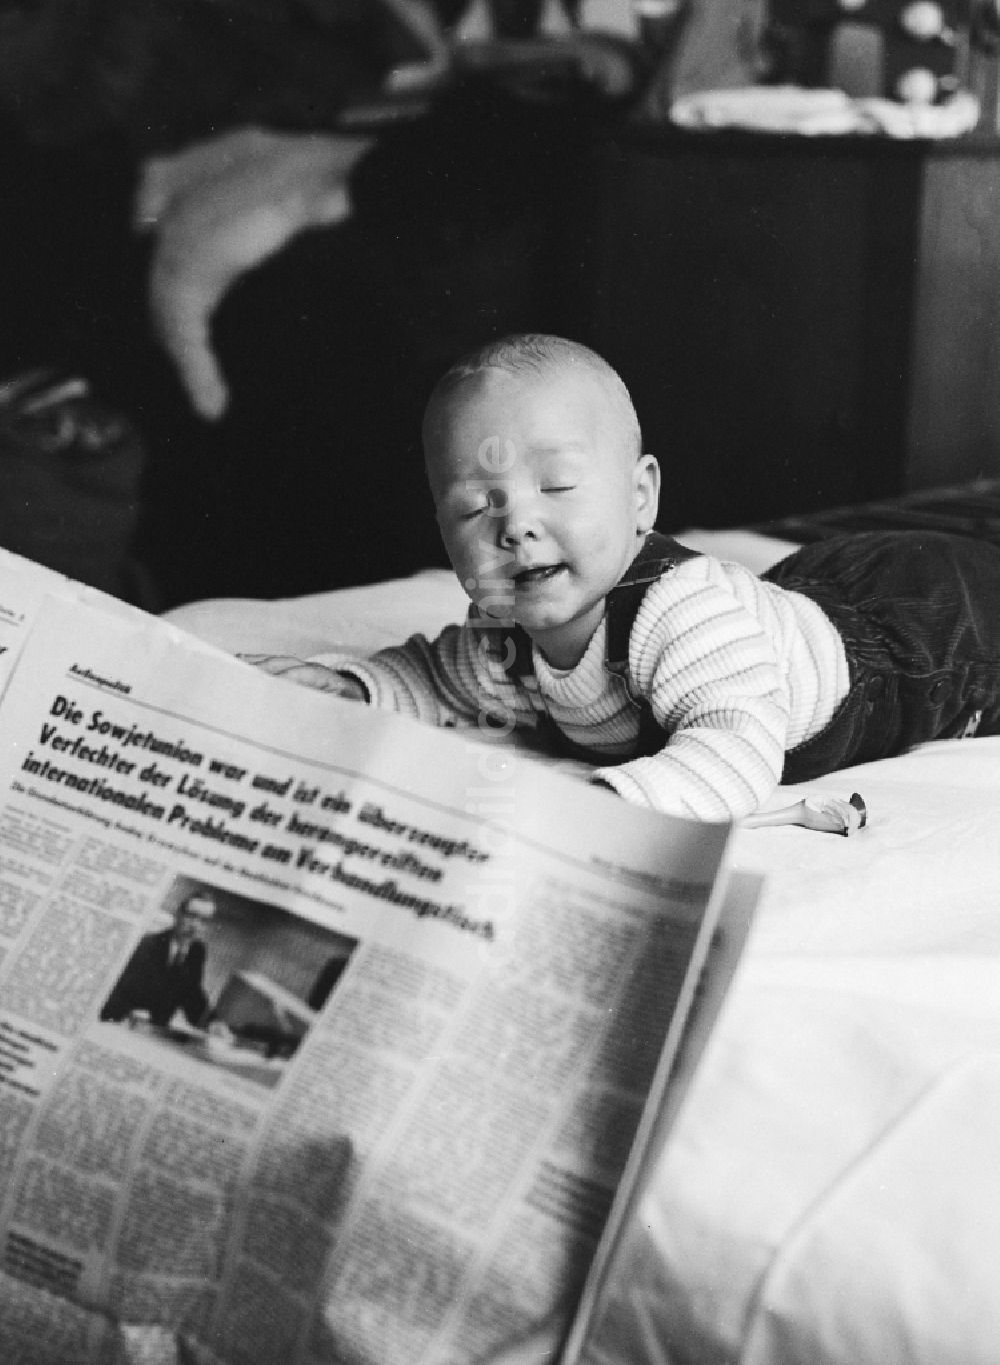 DDR-Fotoarchiv: Berlin - Ein Kleinkind auf einer Krabbeldecke in Berlin, der ehemaligen Hauptstadt der DDR, Deutsche Demokratische Republik